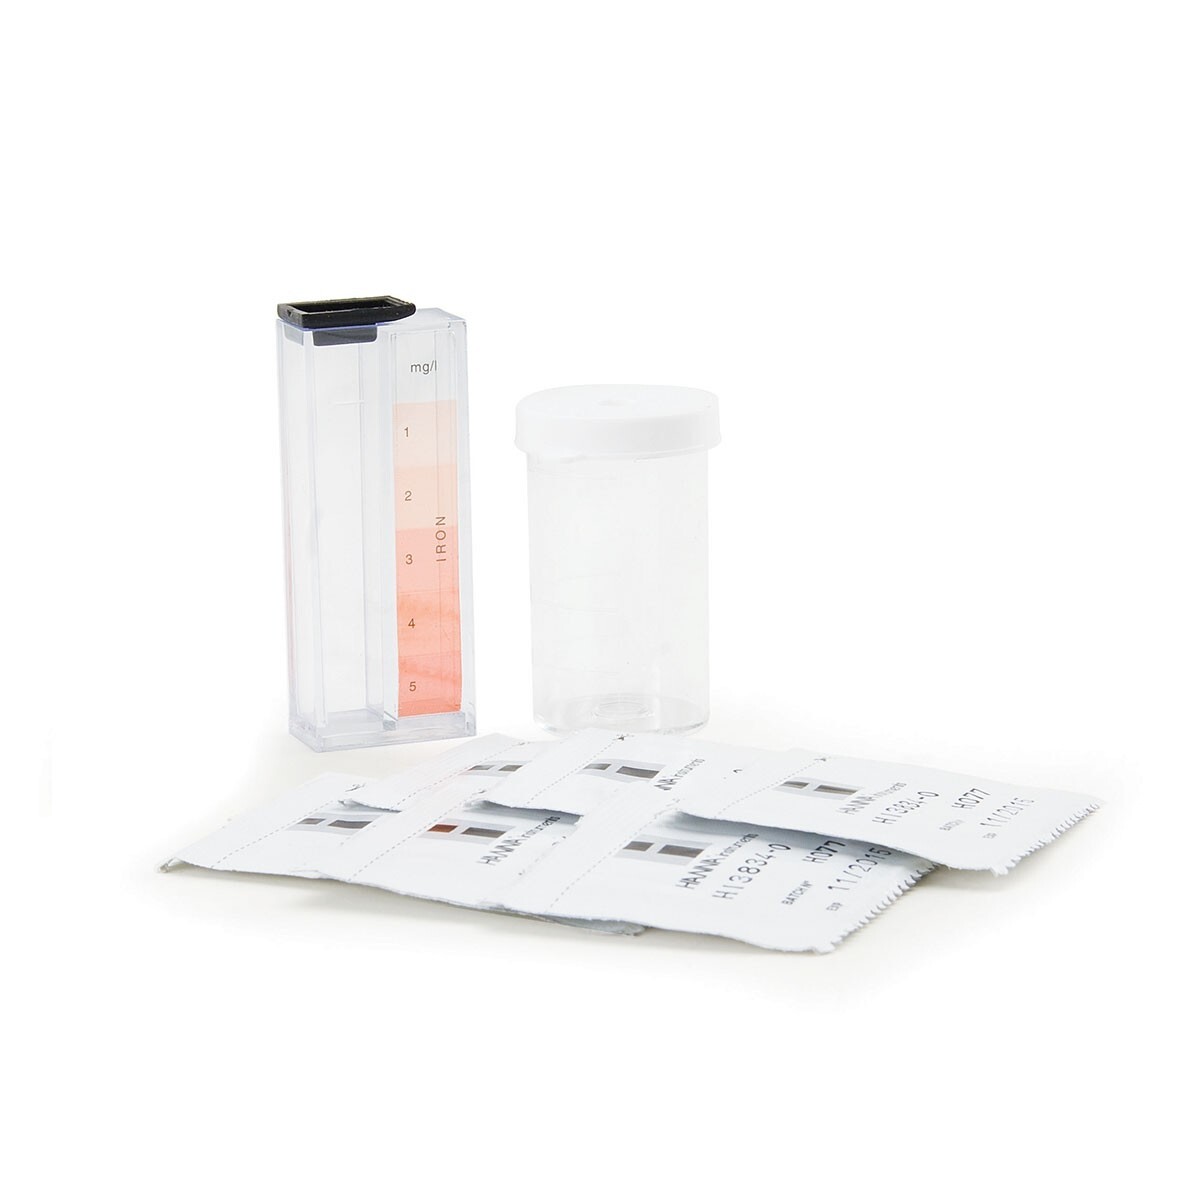 Bộ Test Kits đo nồng độ sắt trong nước Hanna Hi 3834, 0-5 mg/L